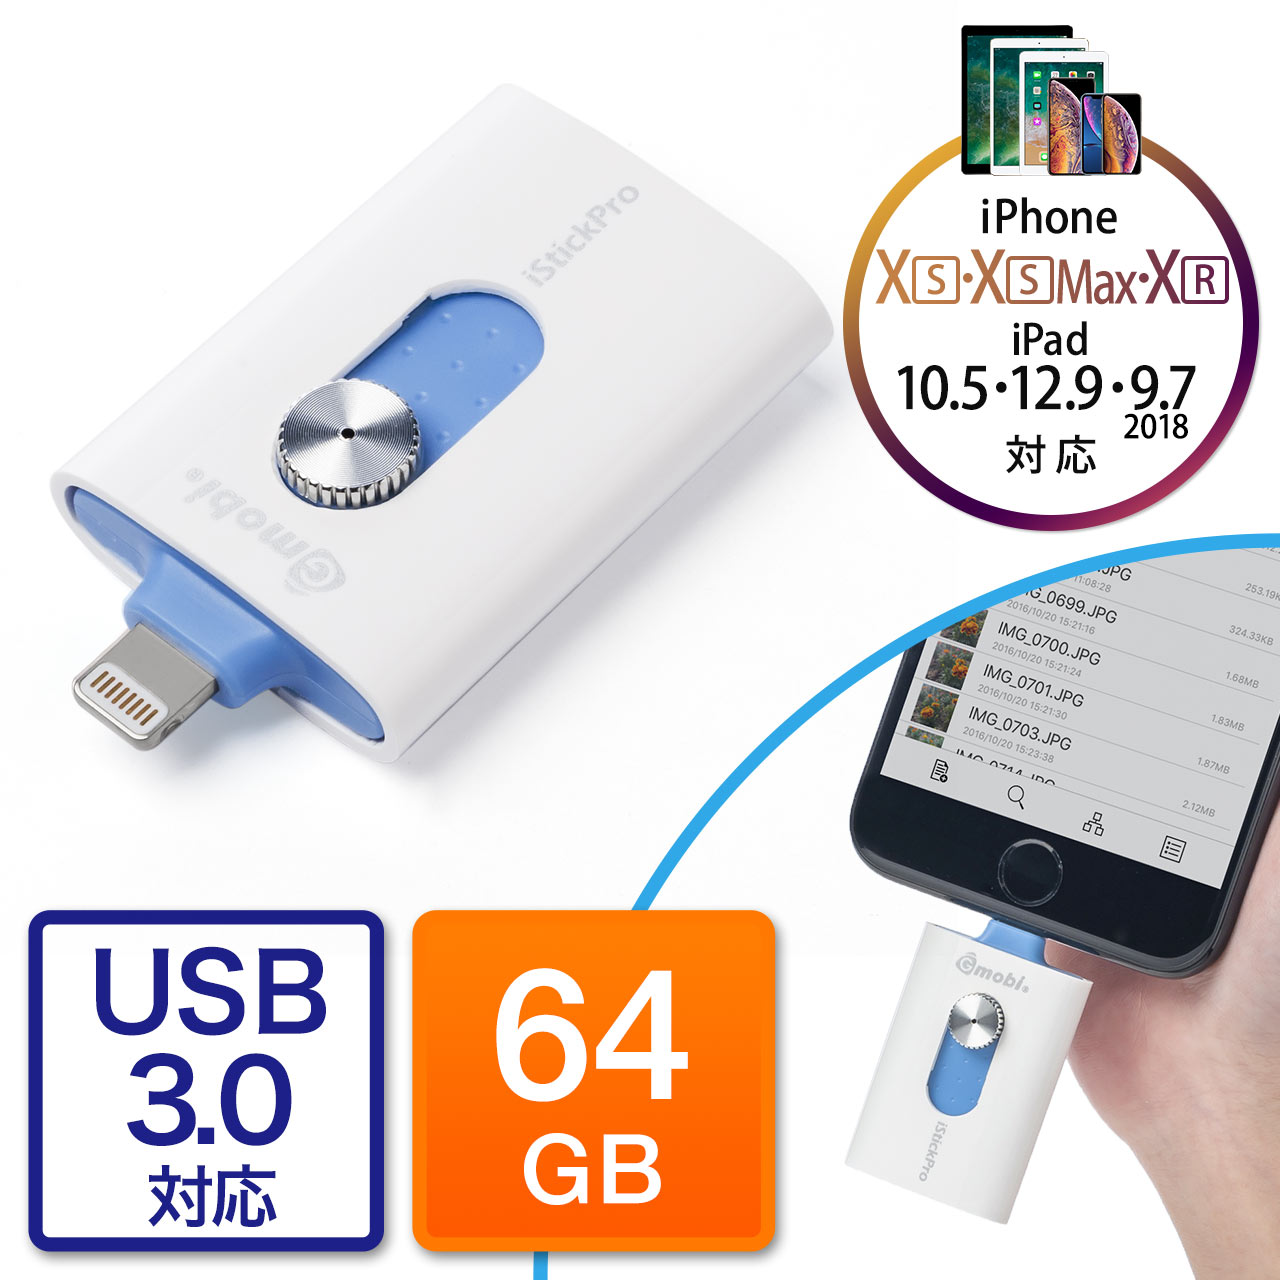 iPhoneEiPad USB 64GBiUSB3.0ELightningΉEMFiF؁EiStickPro 3.0j 600-IPL64GL3